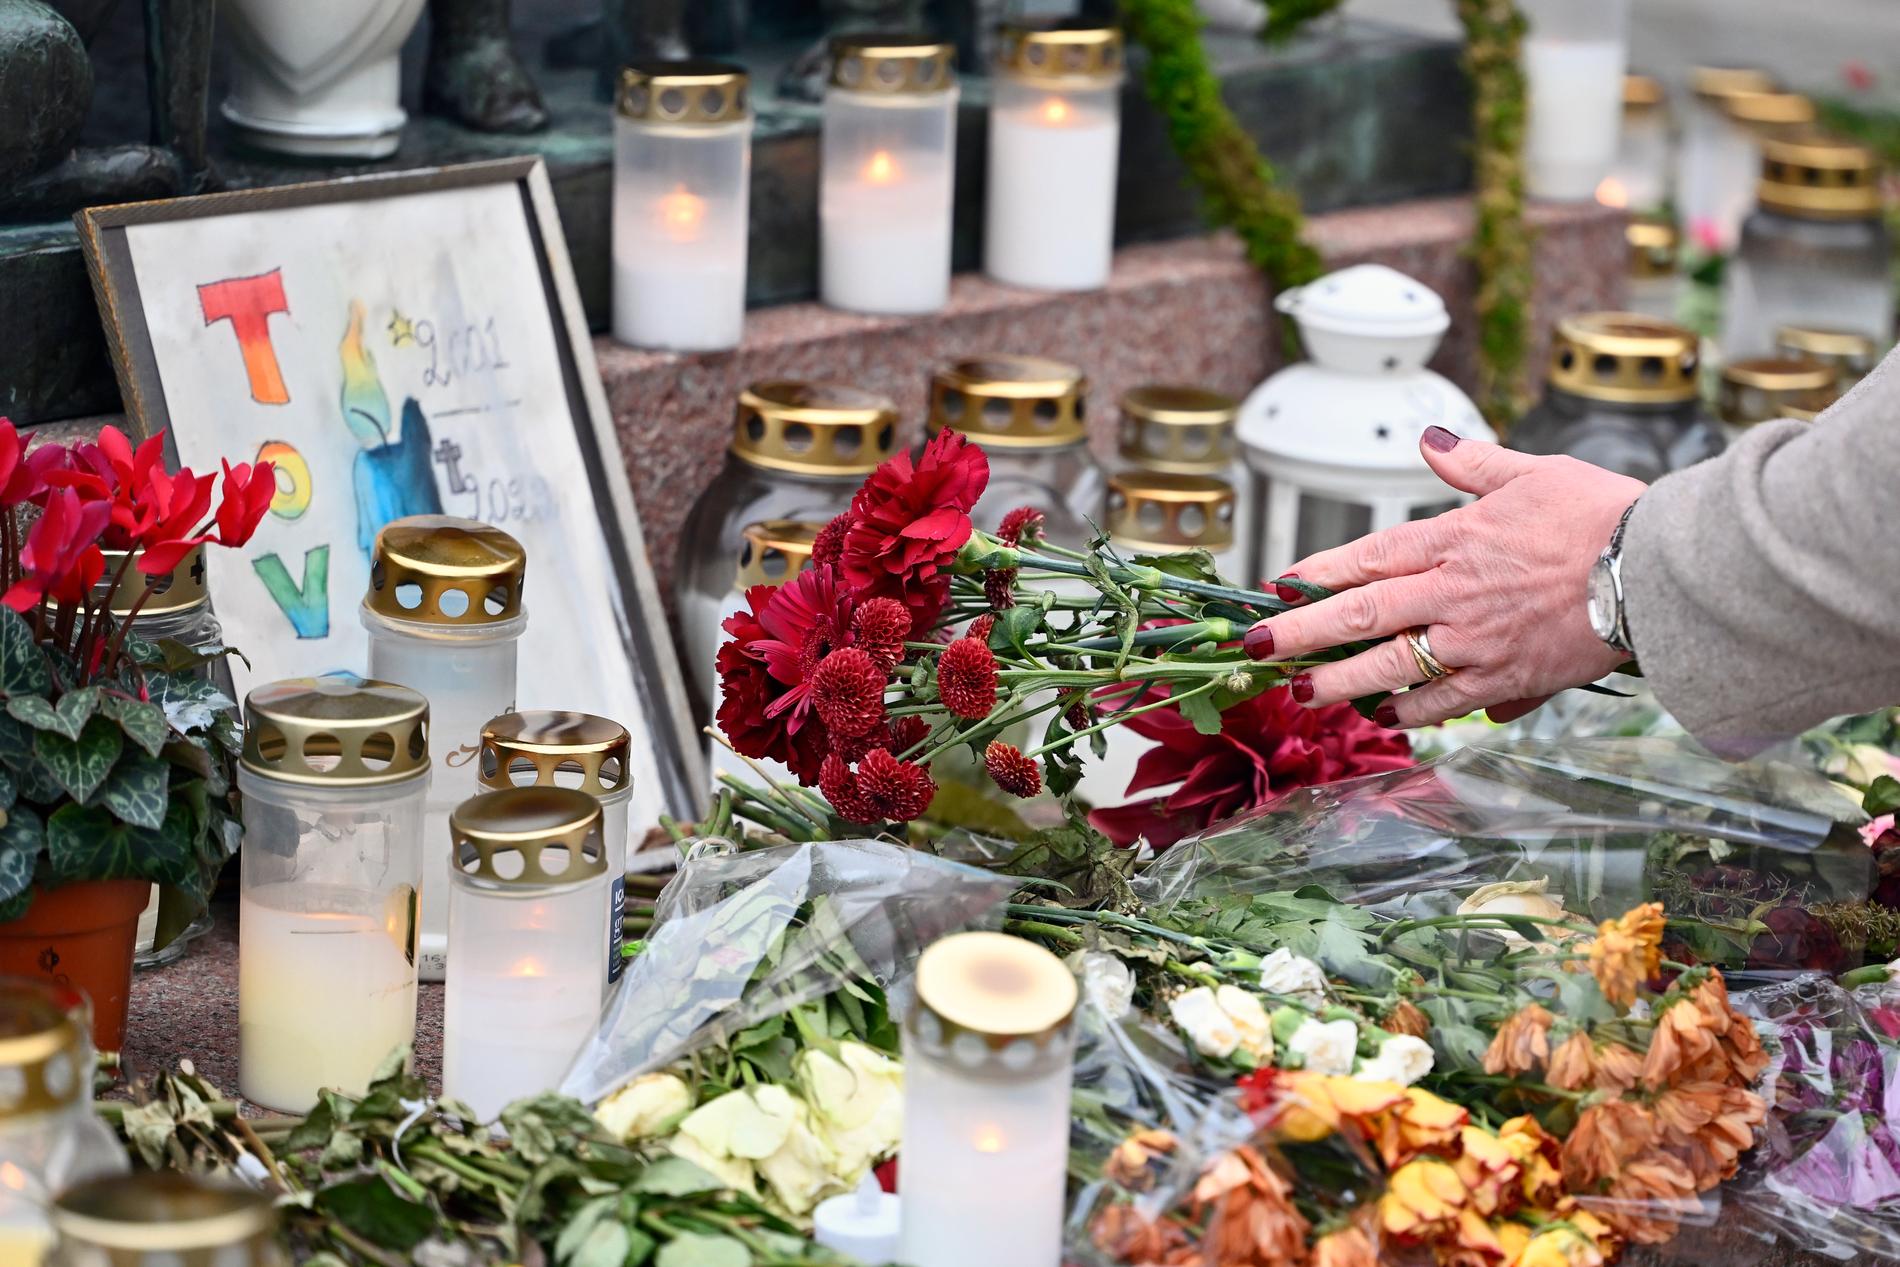 Blommor och ljus på Storgatan i Vetlanda, där en spontan minnesplats för 21-åriga Tove uppstod.